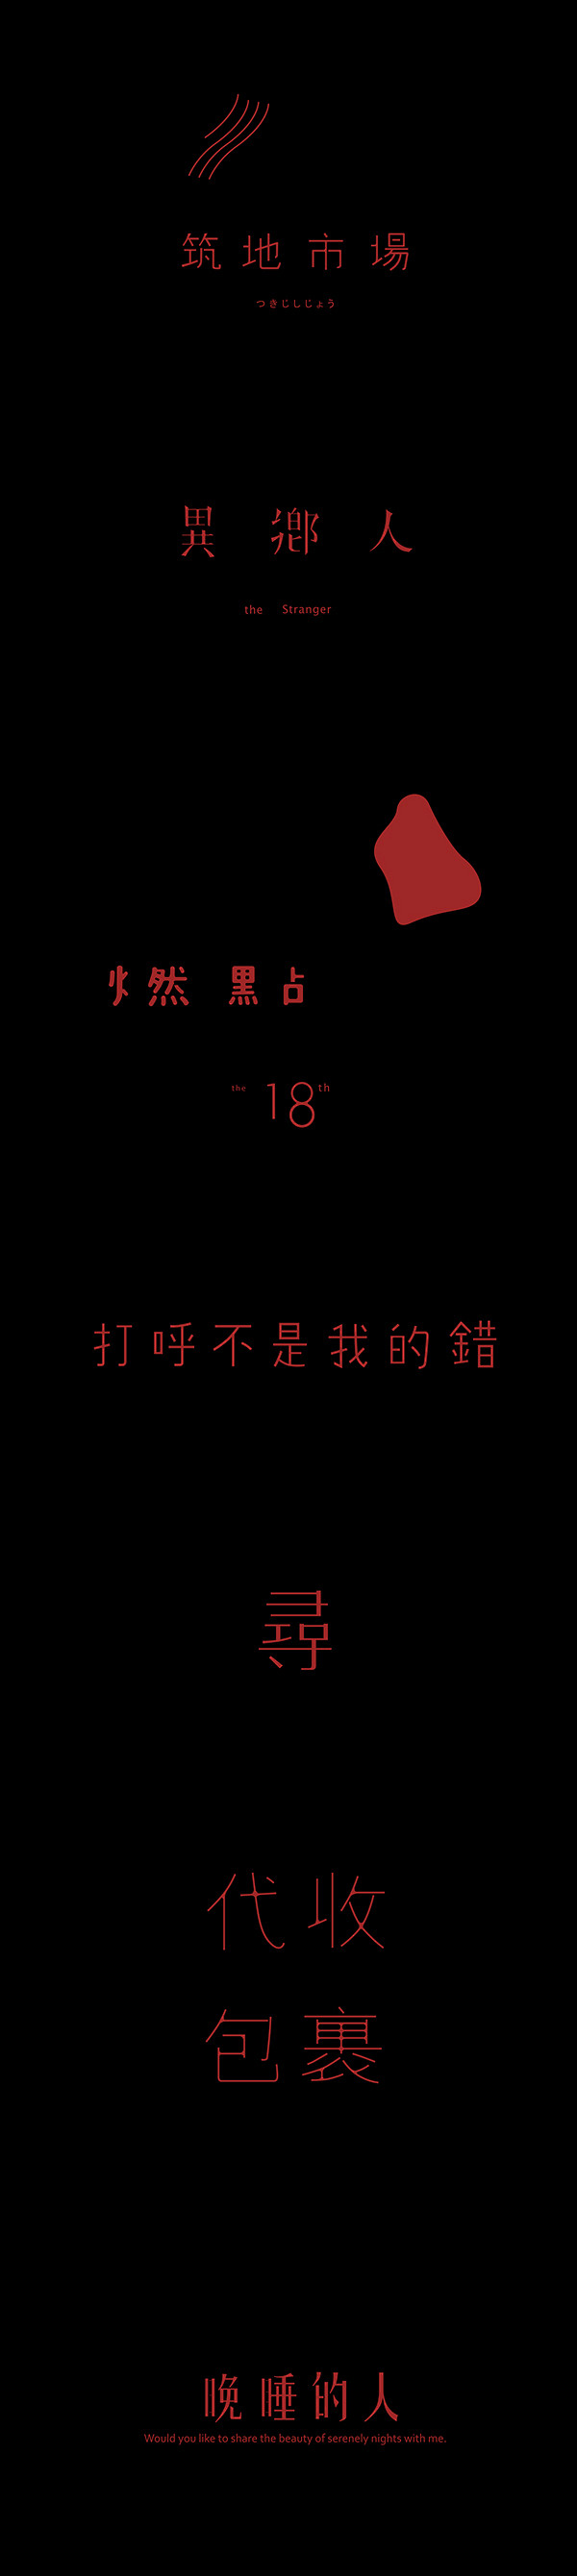 台湾字体设计师中文字体设计作品